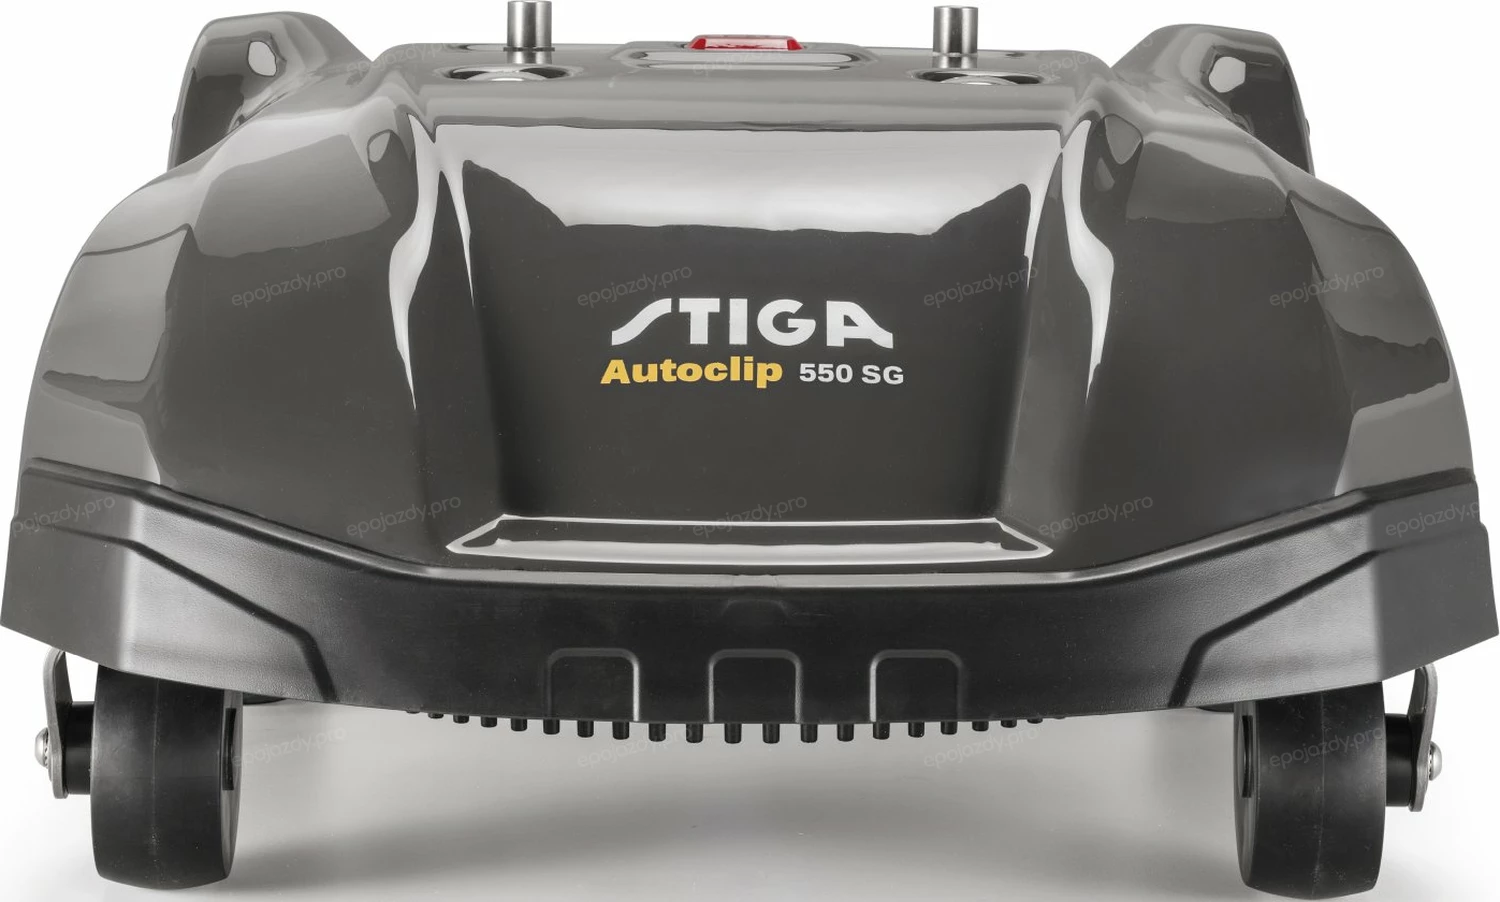 Robot koszący Stiga Autoclip 550SG - widok z przodu